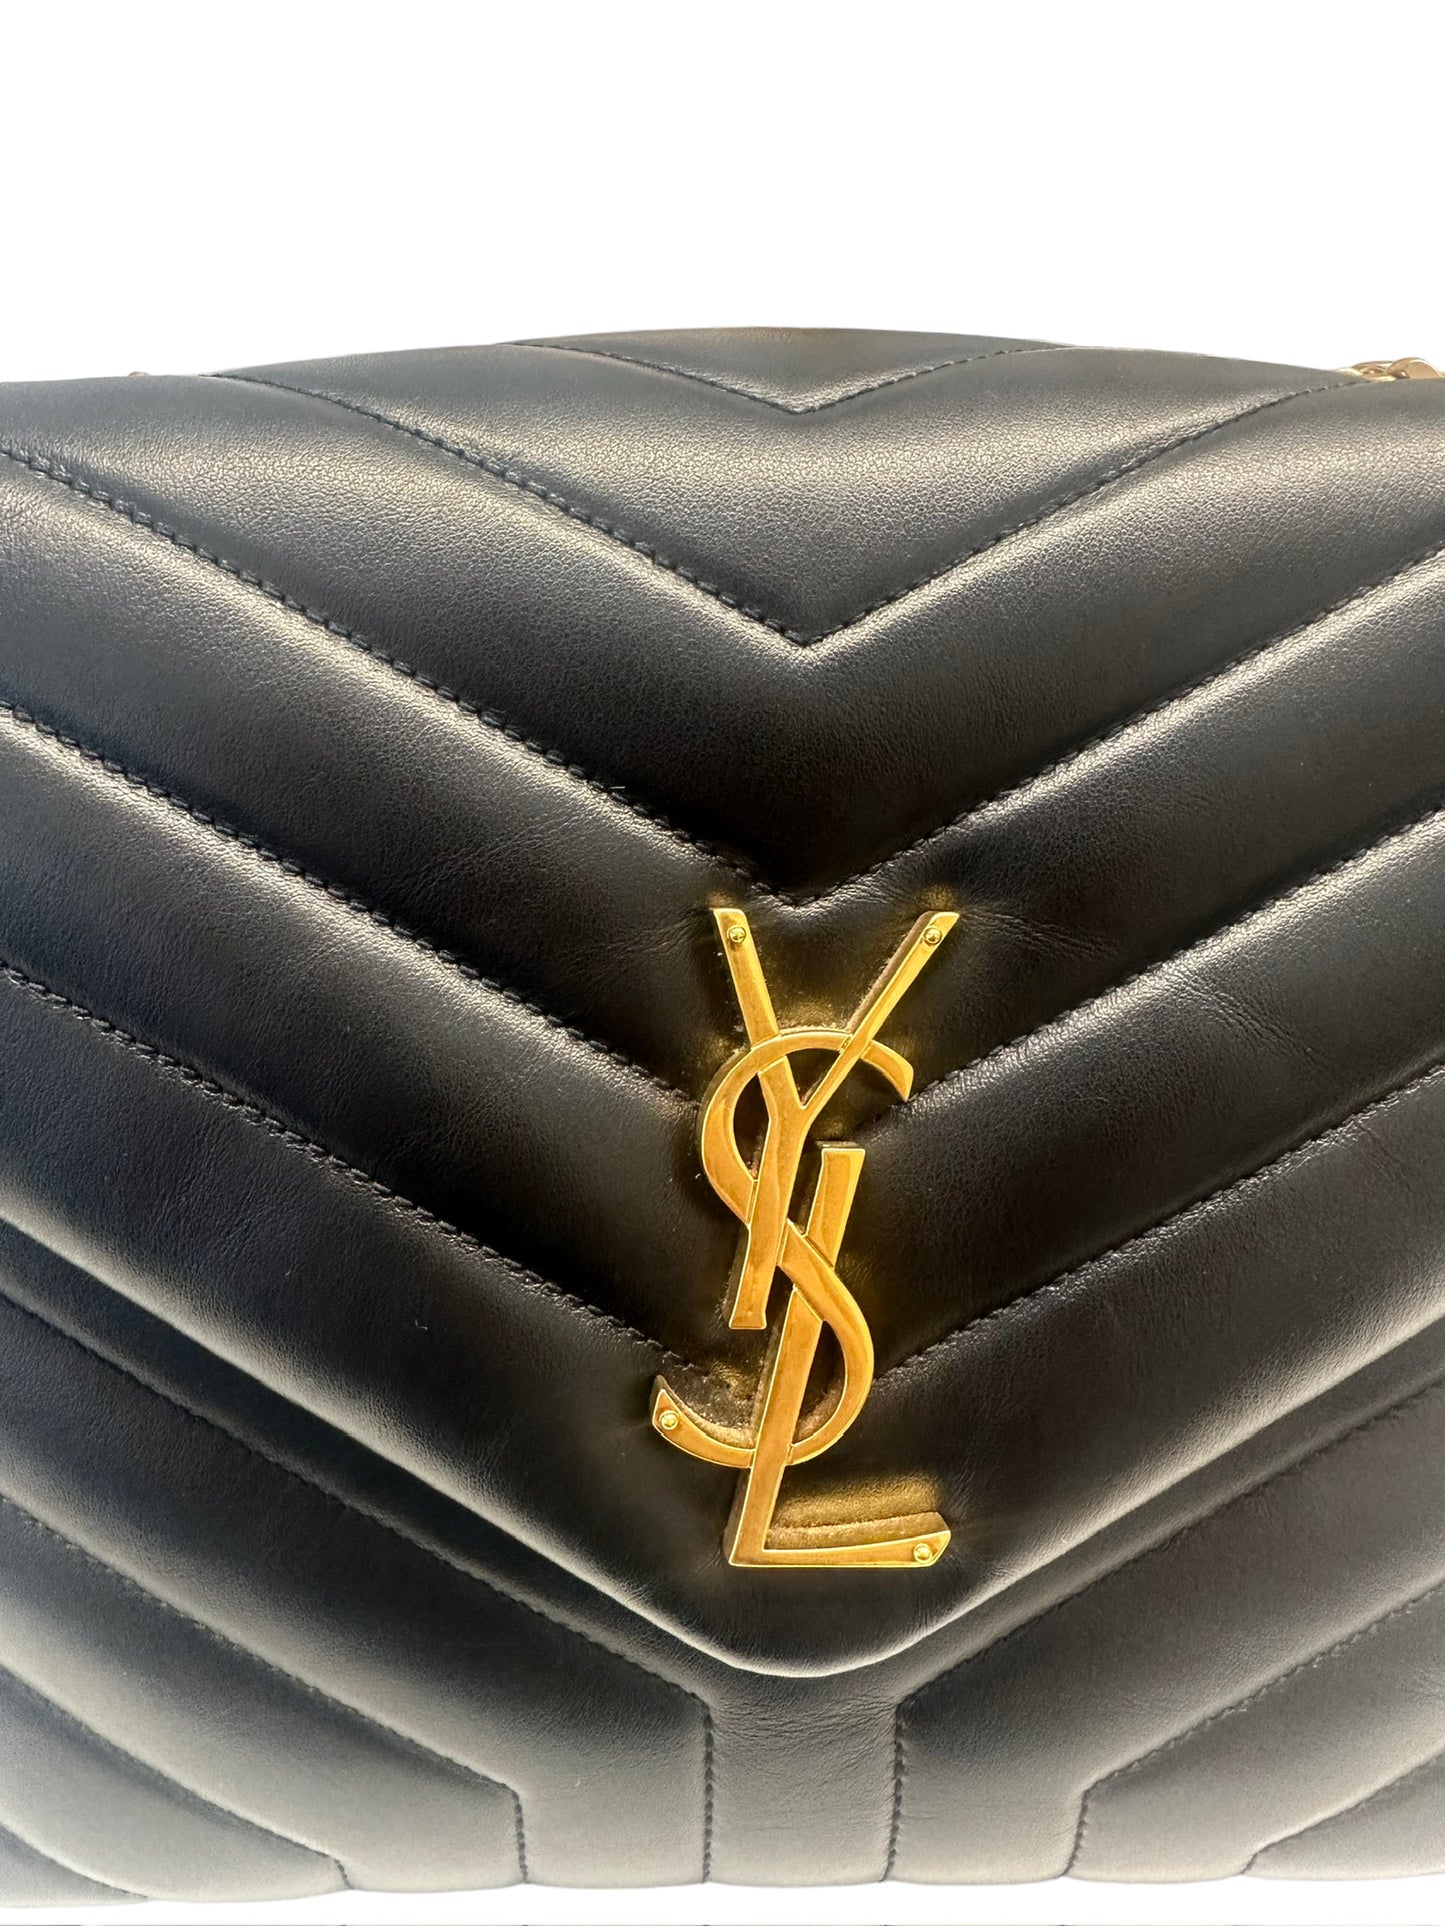 SAINT LAURENT - Black Matelassé Leather Medium Loulou Bag